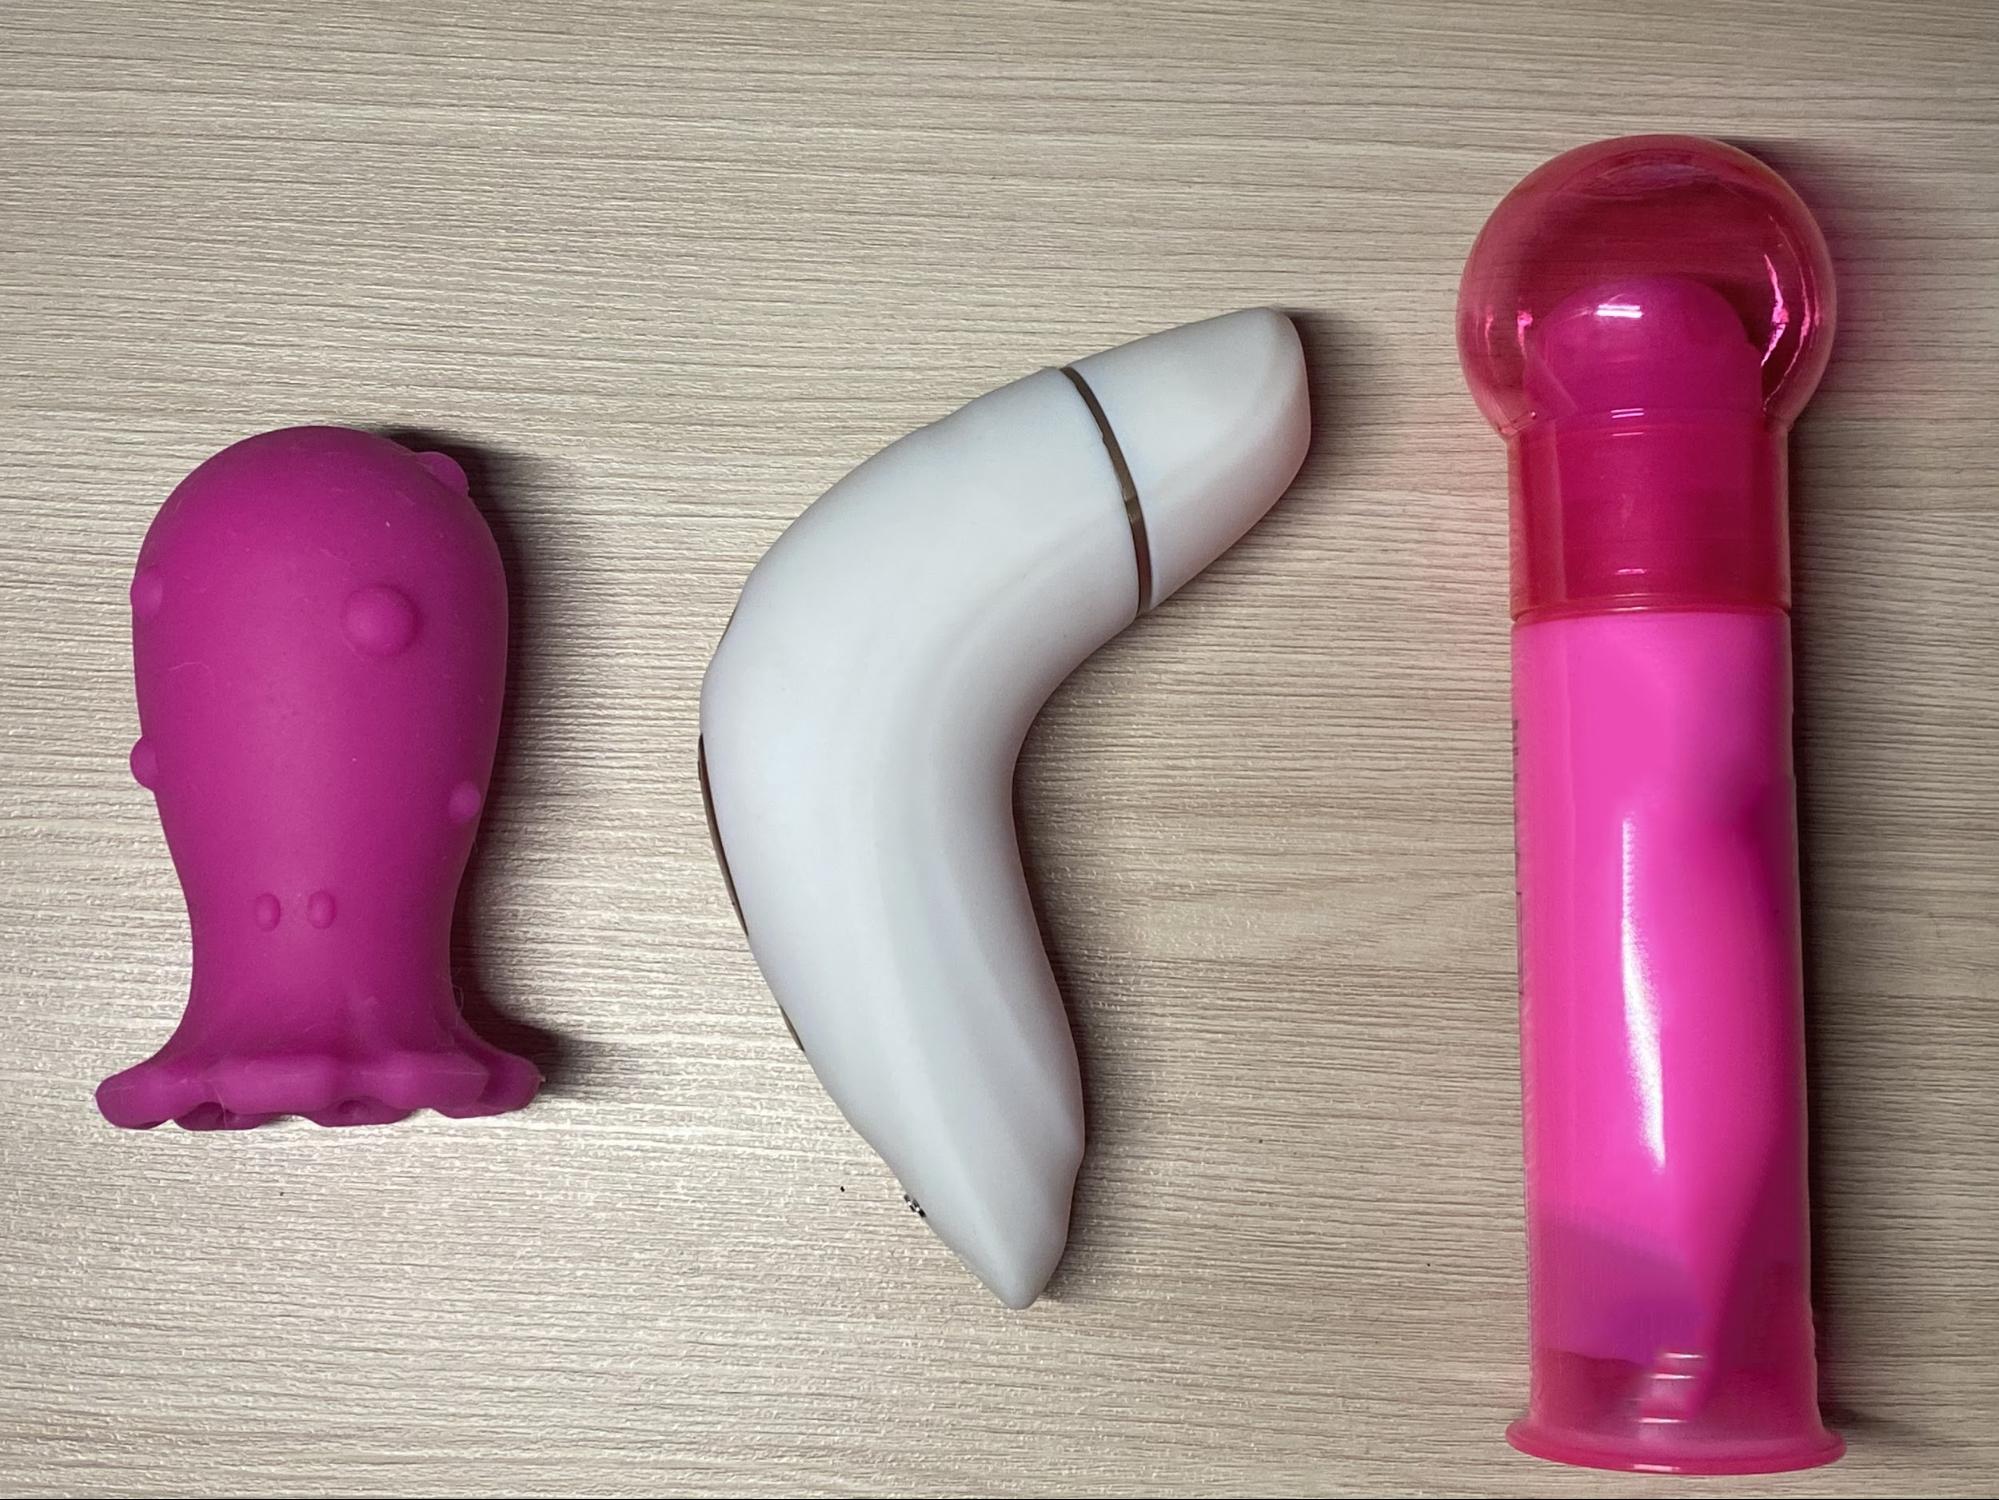 Секс игрушки для женщин. Конфиденциальный интернет магазин женских товаров